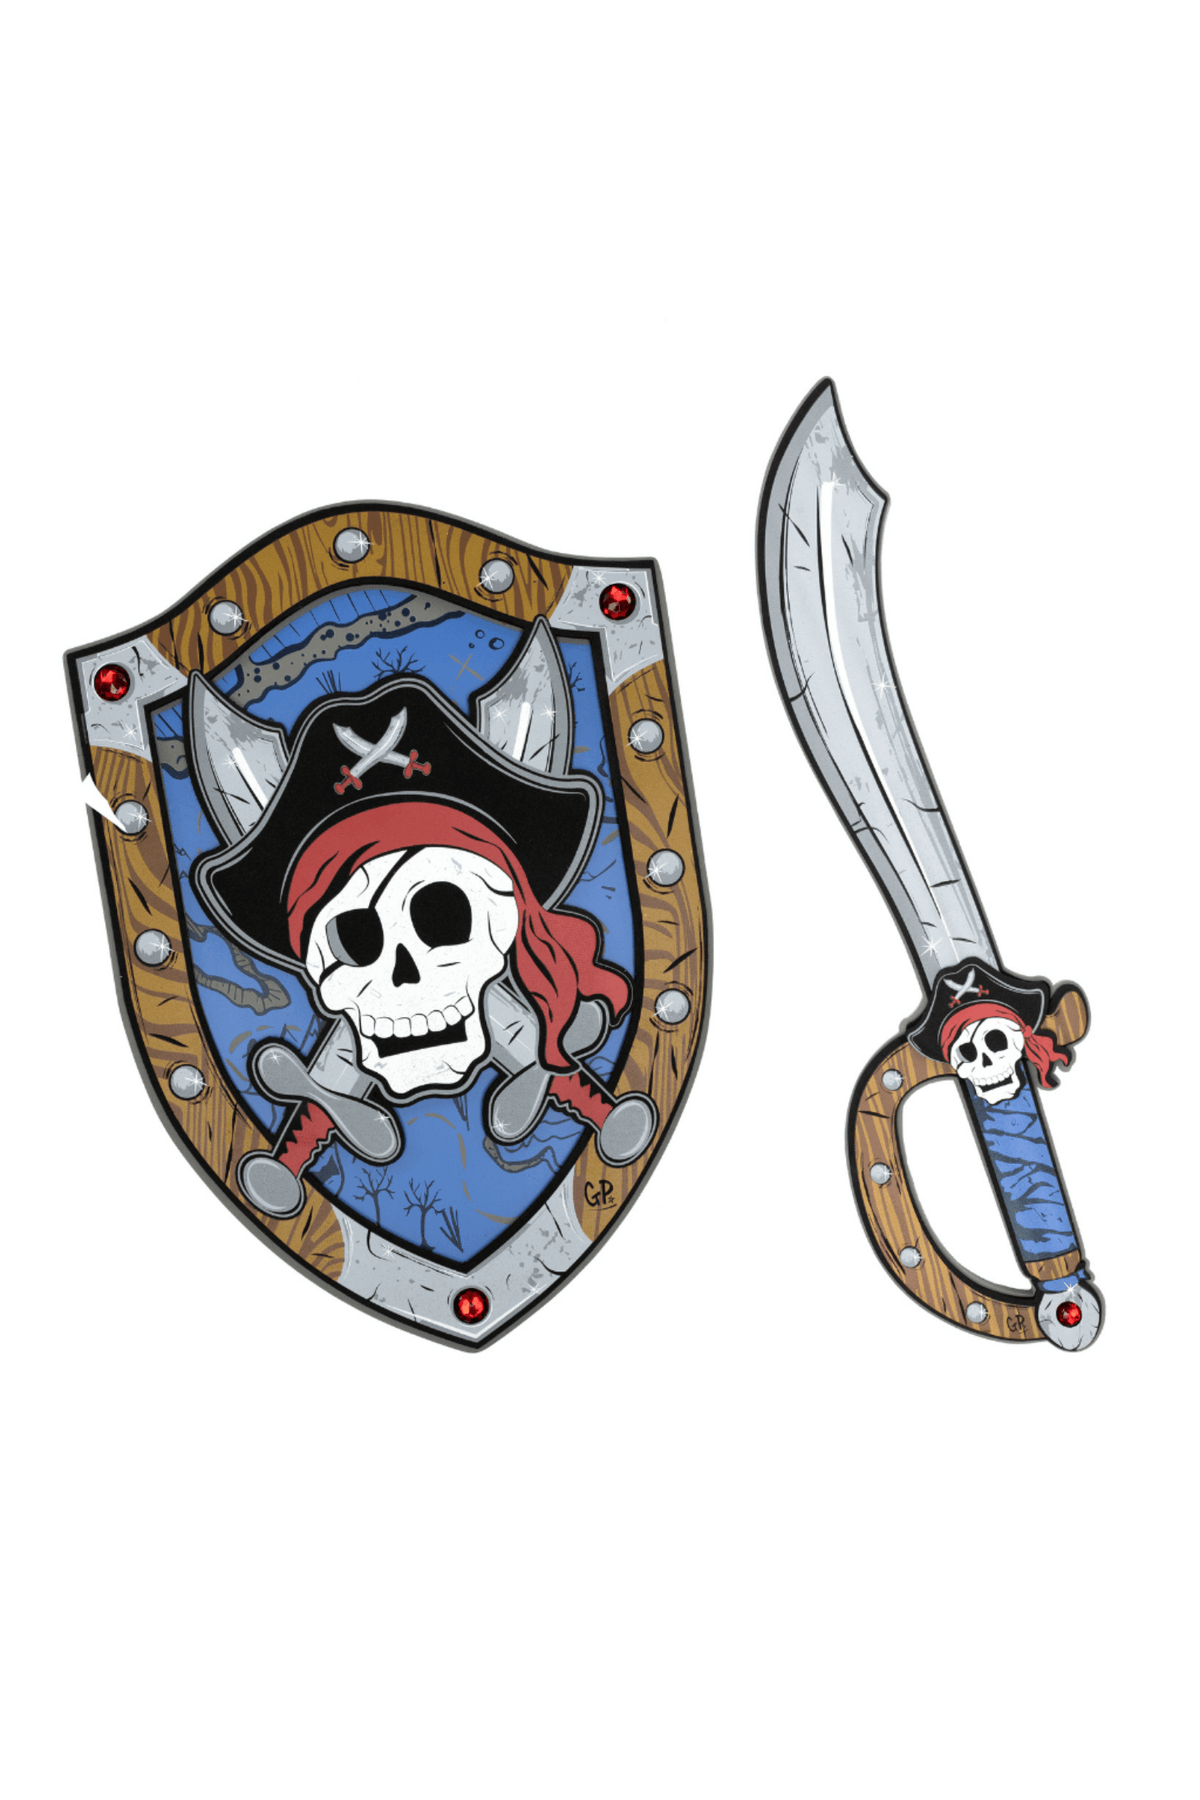 Captain Skully Pirate EVA Sword